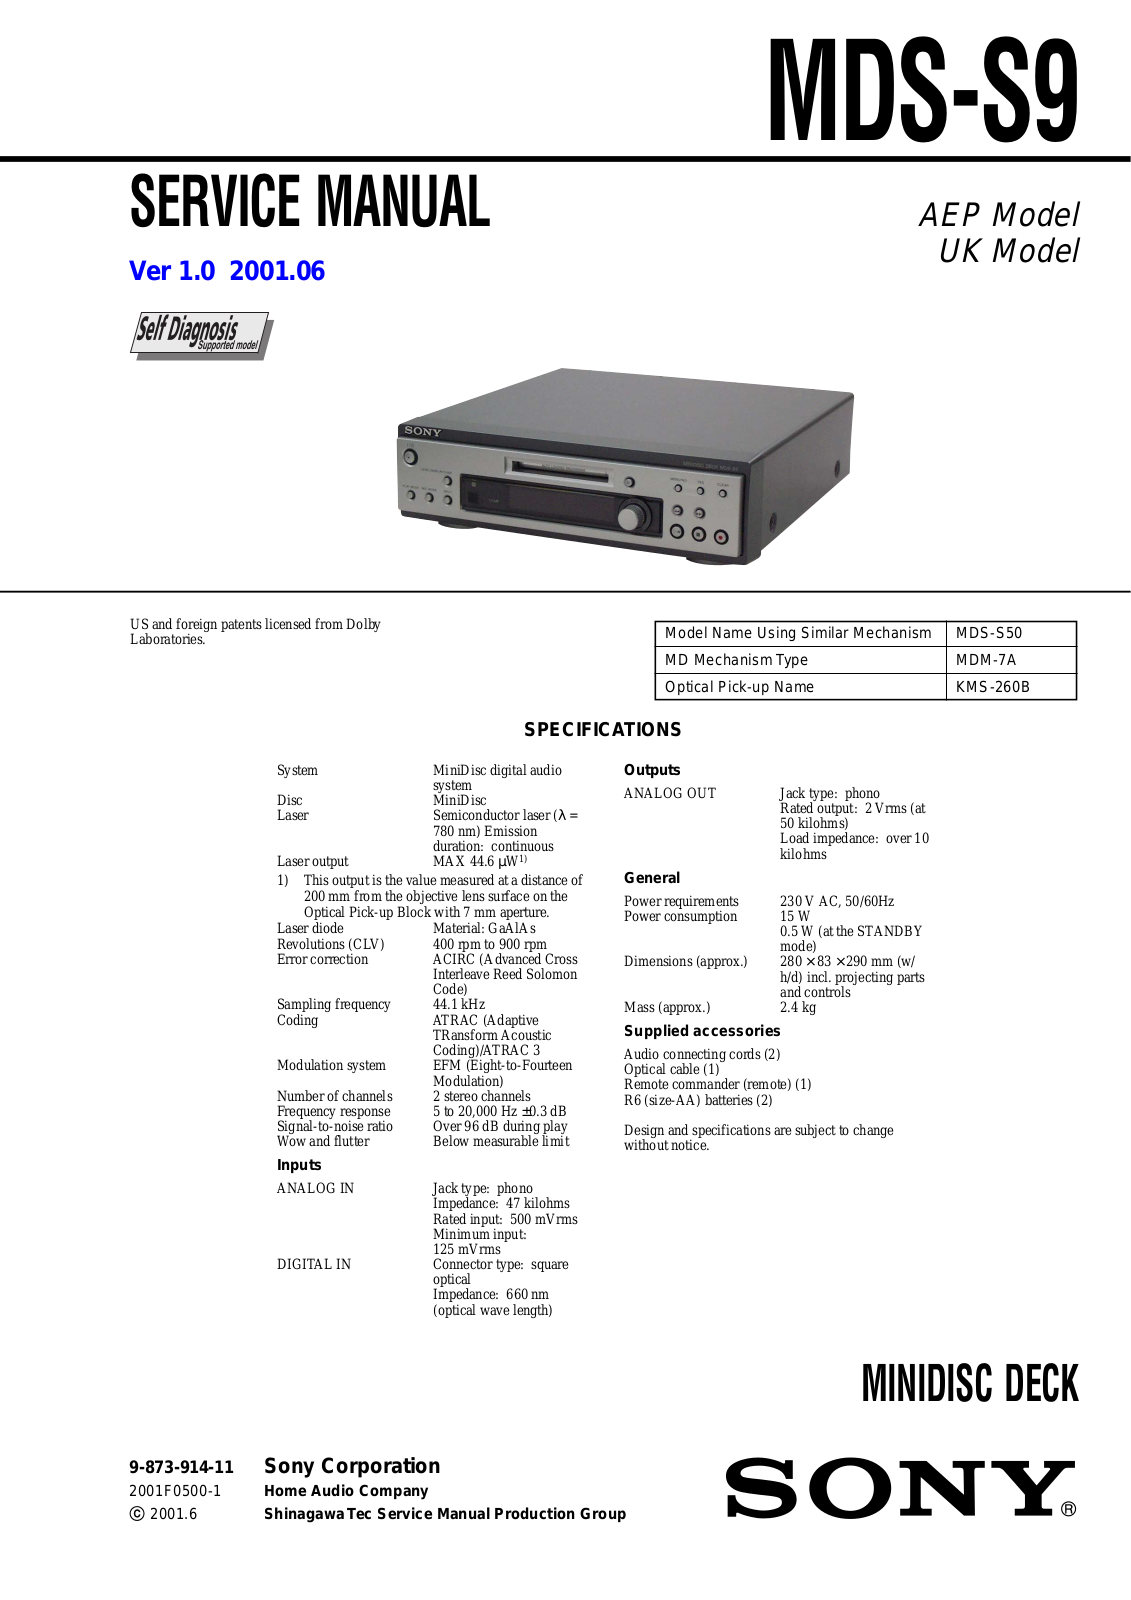 Sony MDSS-9 Service manual